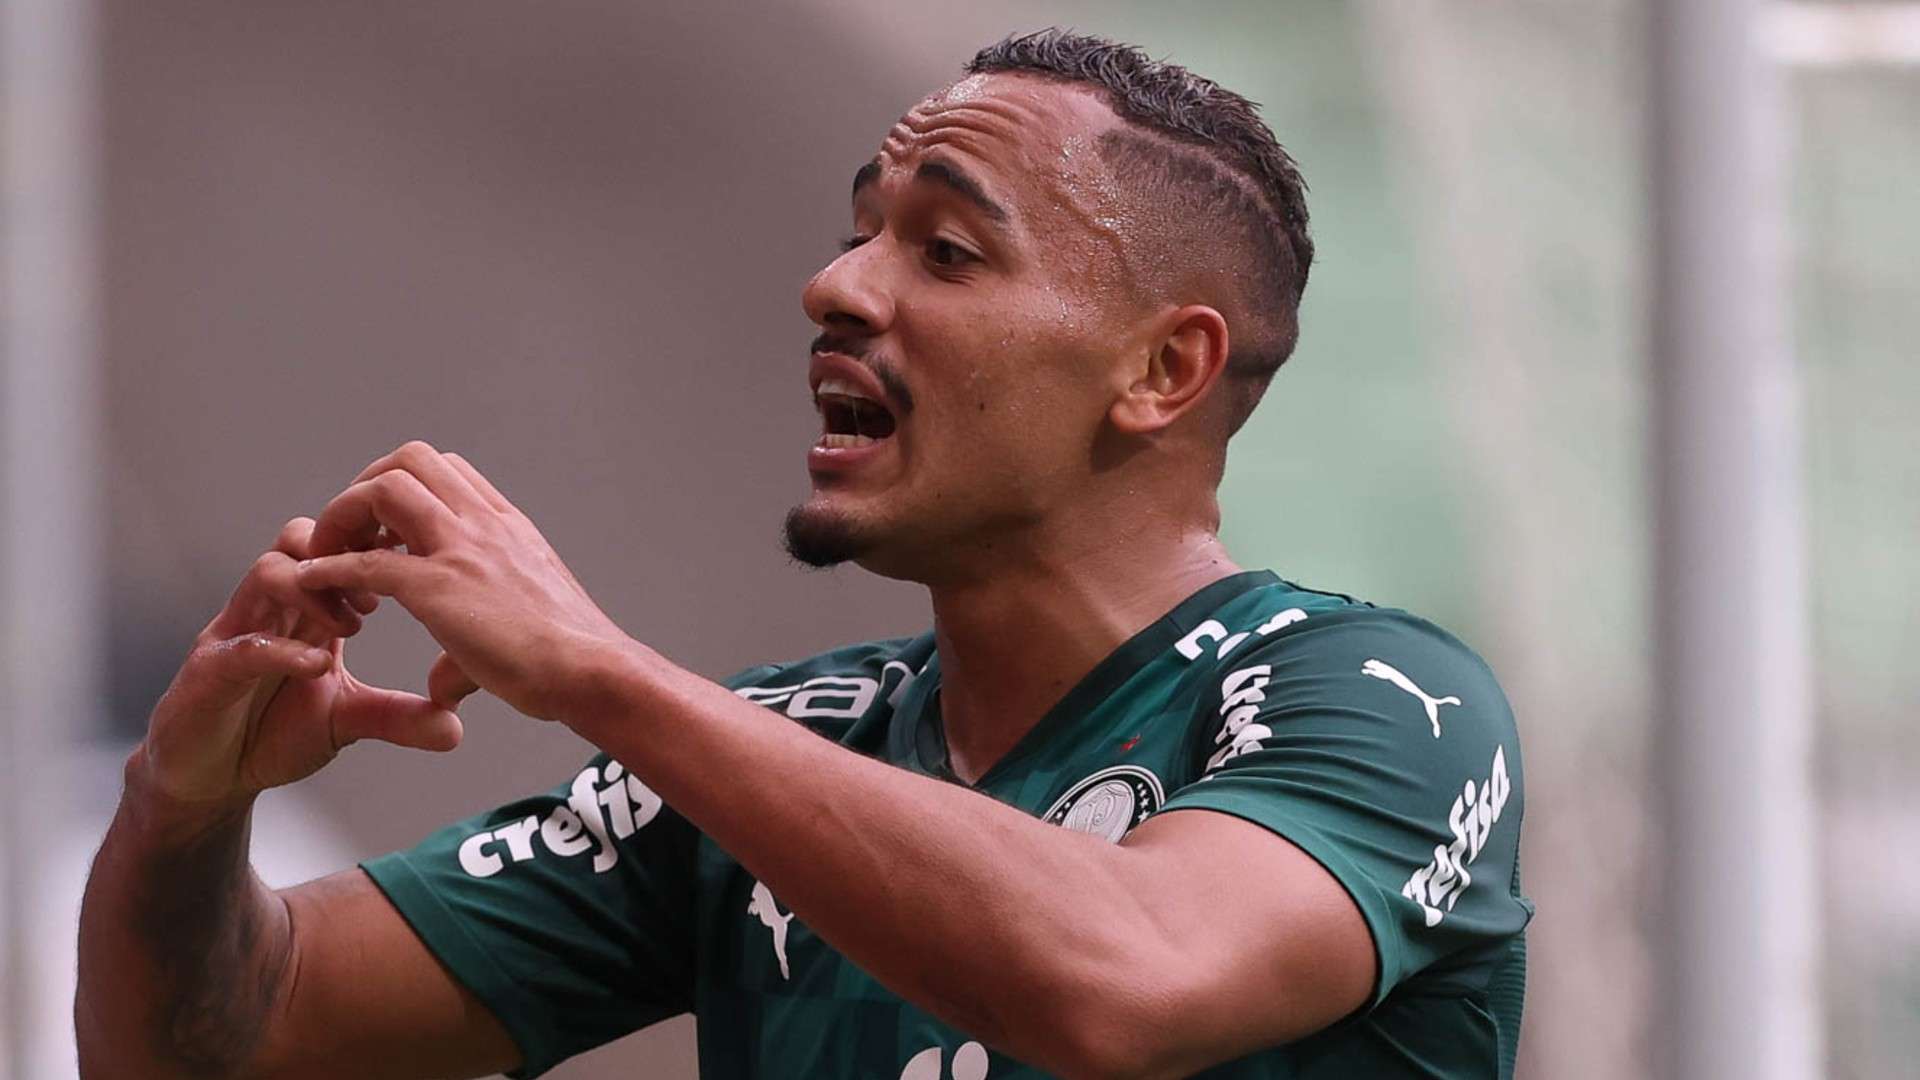 Rafael Elias Papagaio Palmeiras 14 03 2021